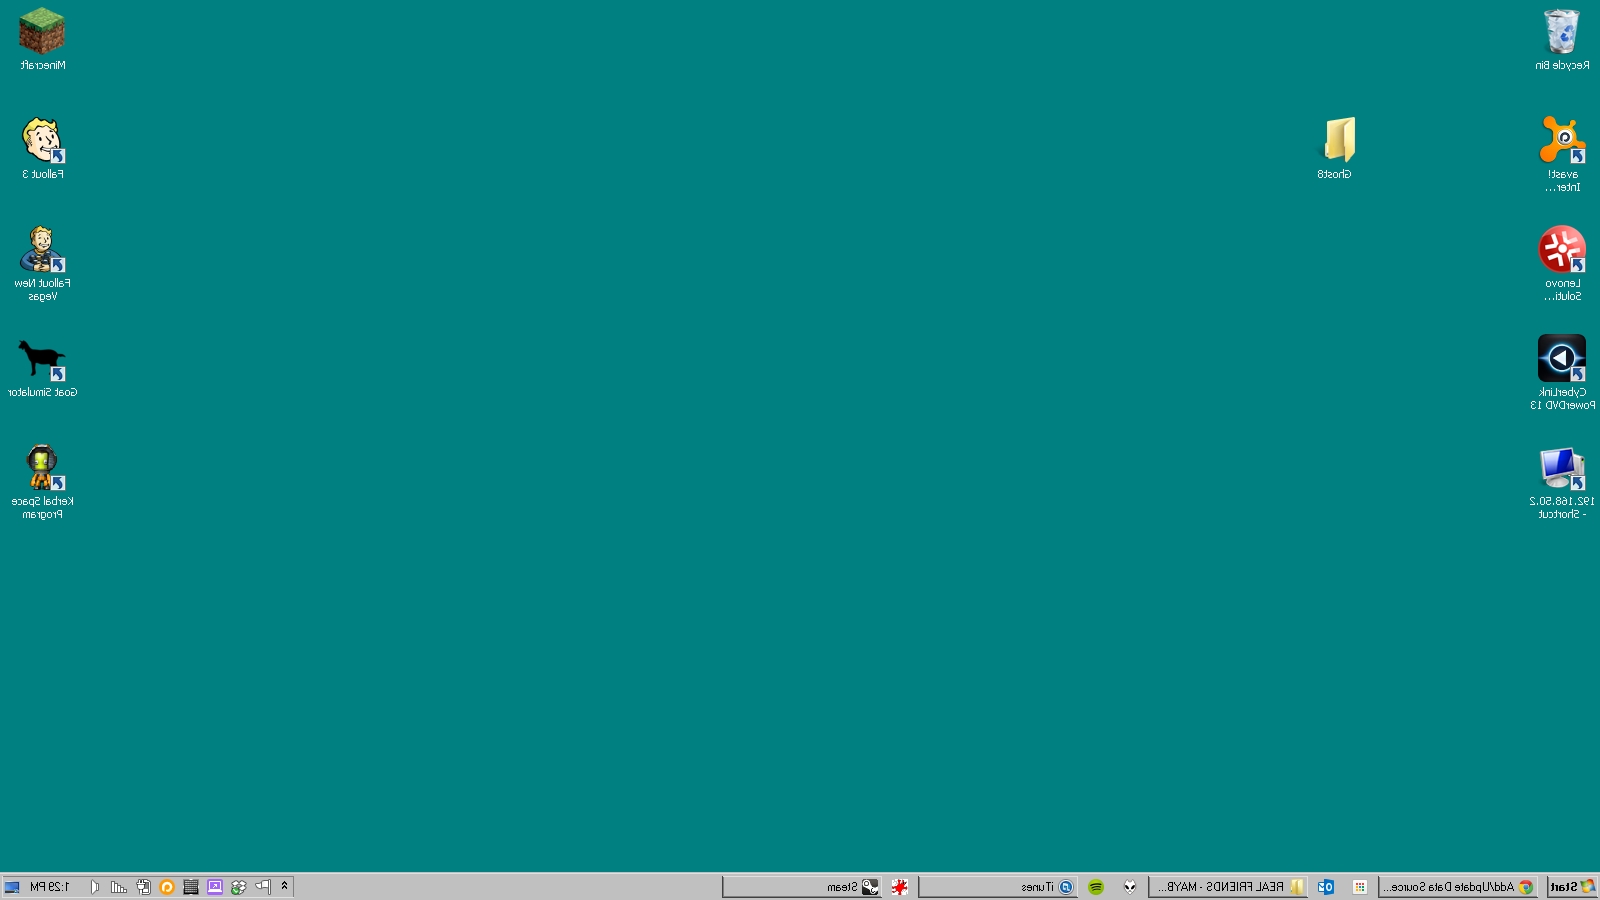 #13myjoh Windows 95 Wallpaper Pack - Desktop Of Windows 98 - HD Wallpaper 